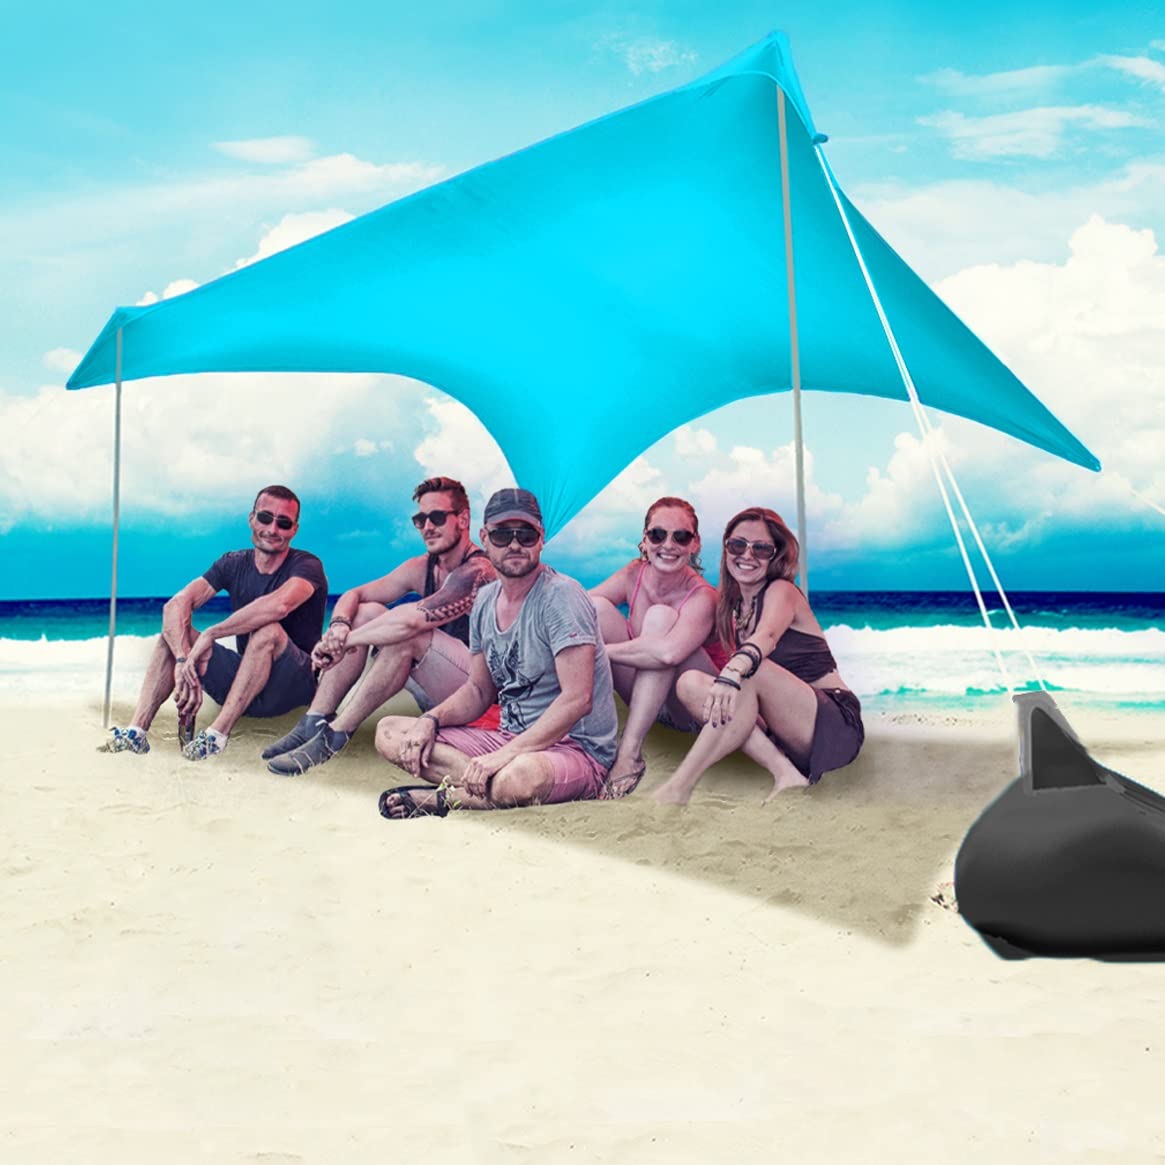 Beach Tent Sun Shelter Pop Up Beach Sun Shade Canopy w/Sandbag Anchors and Stability Poles